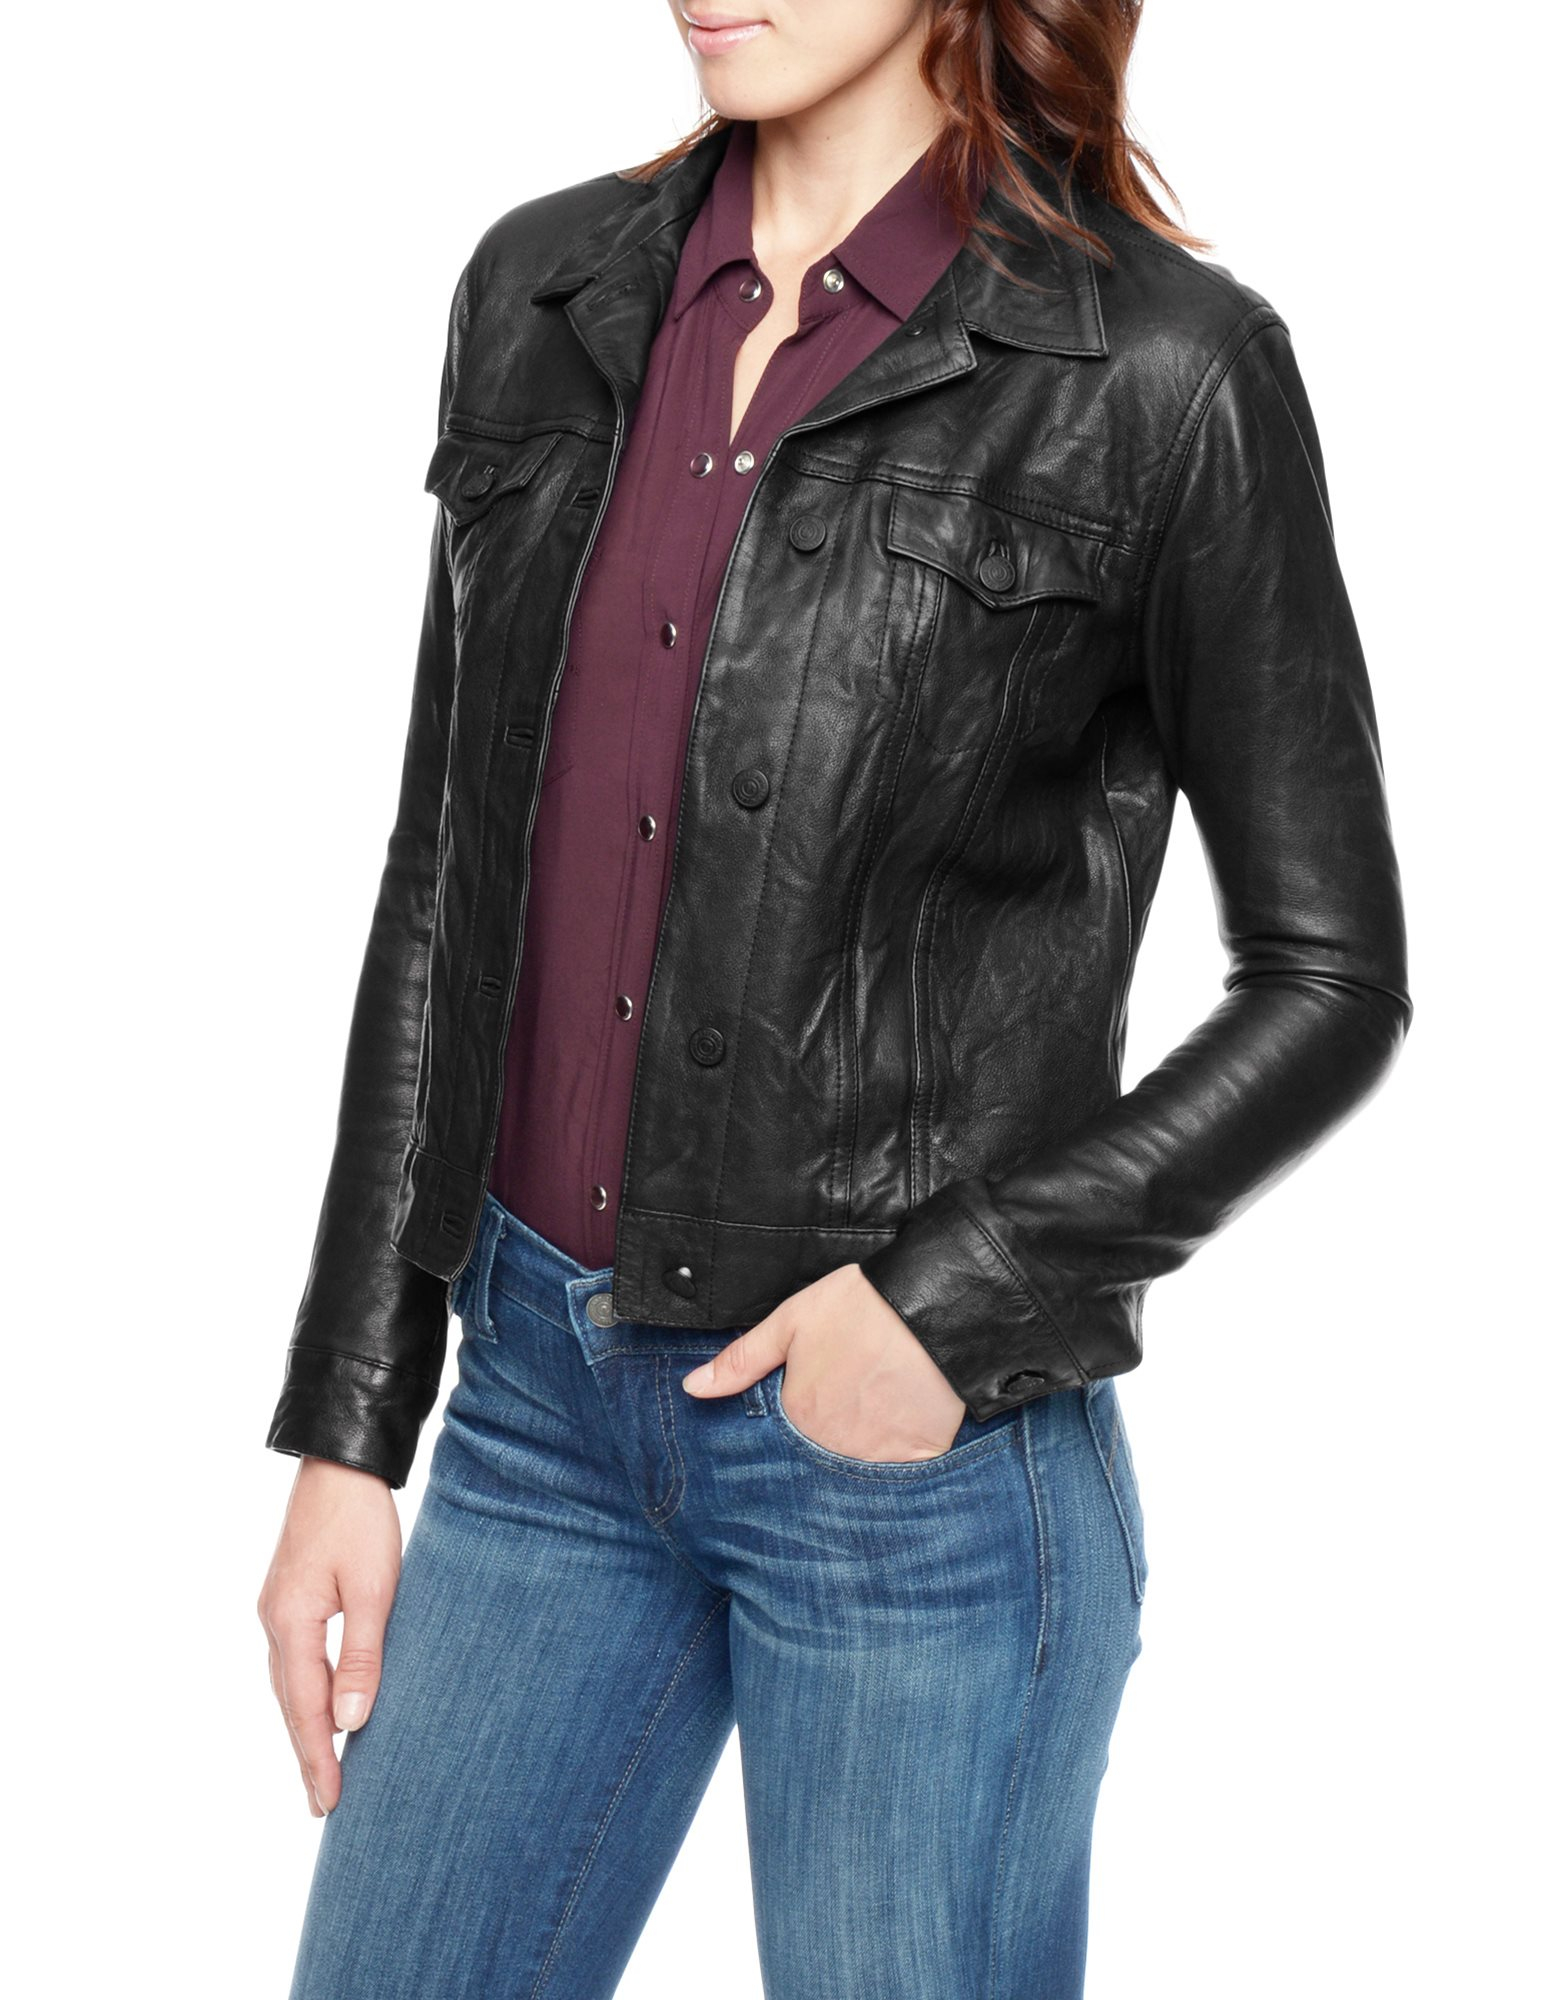 True Religion Dusty Western Leather Womens Jacket in Black - Lyst